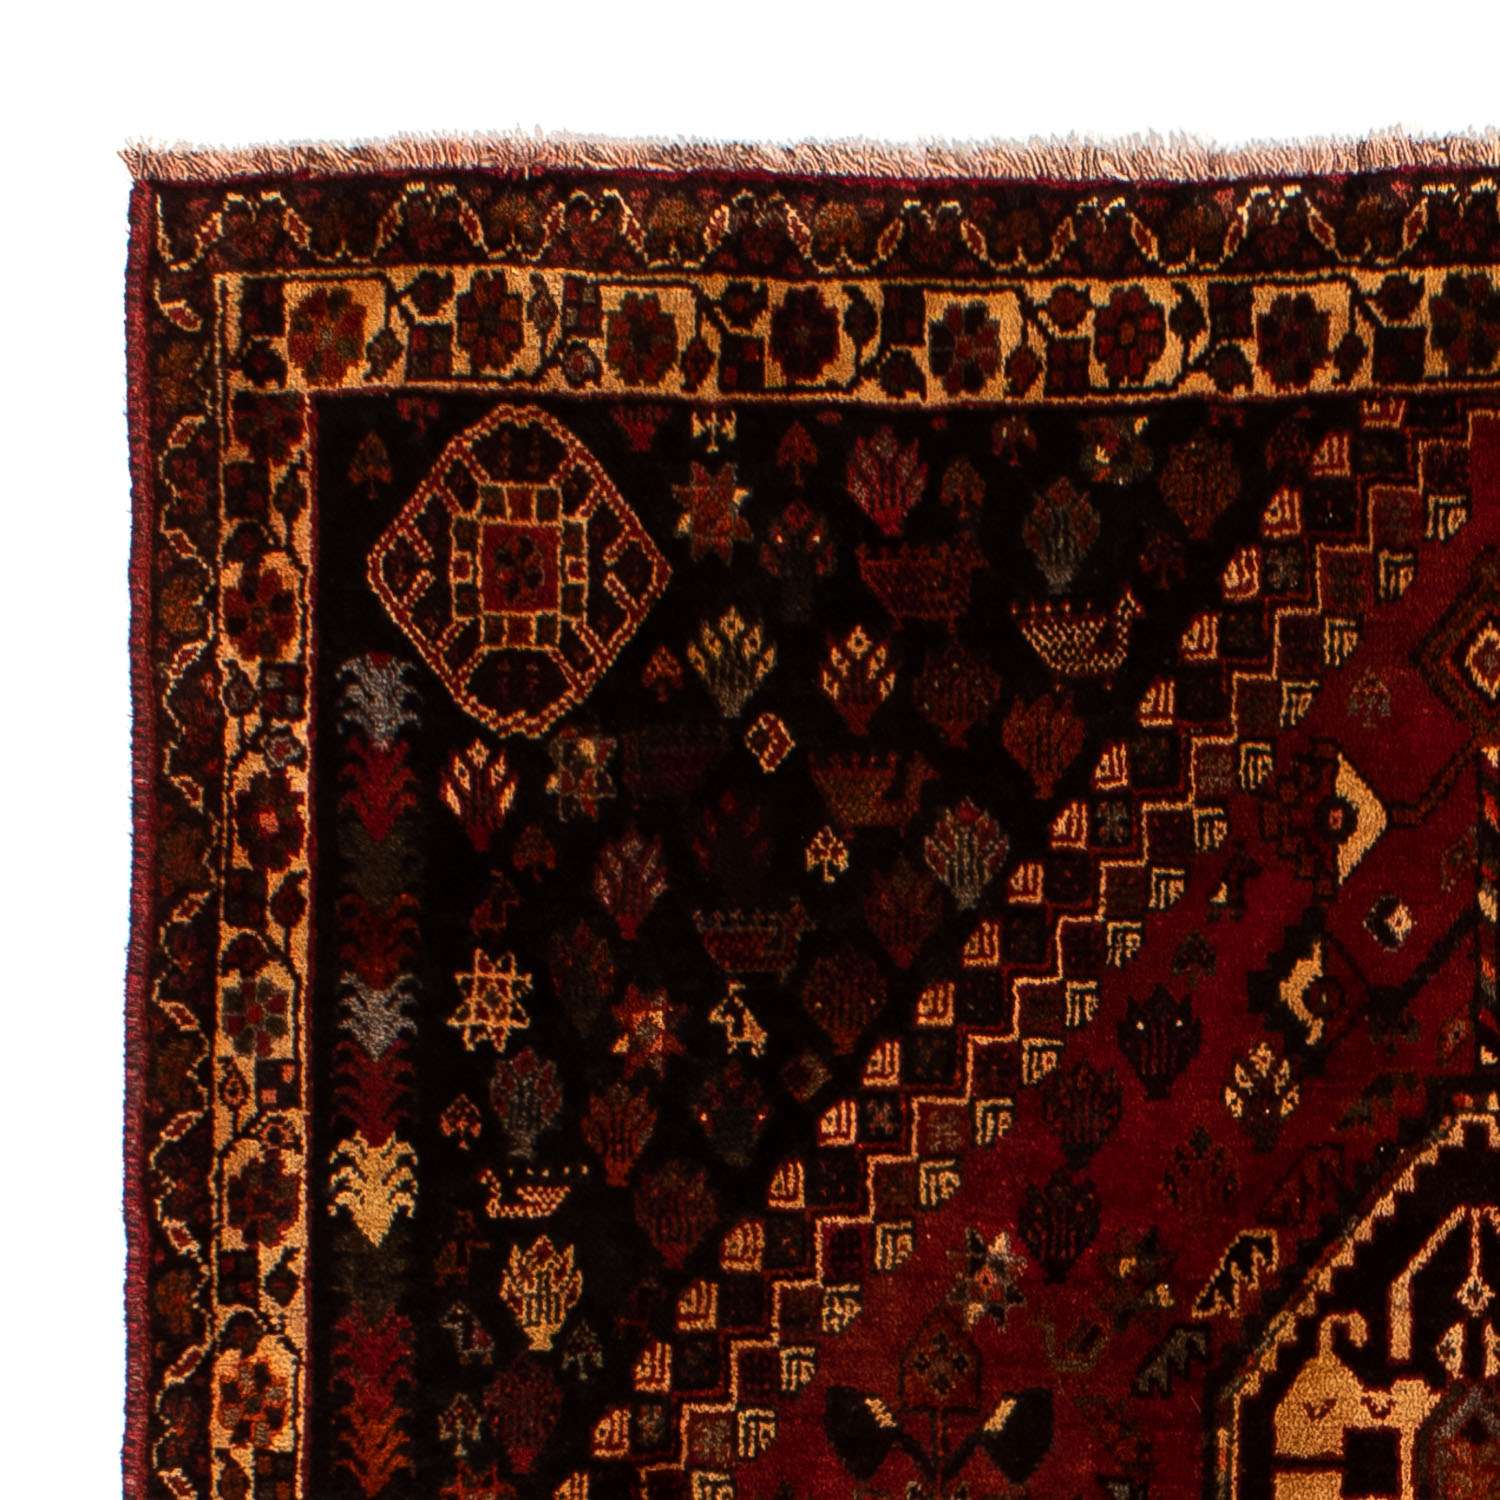 Tapis persan - Nomadic - 250 x 185 cm - rouge foncé